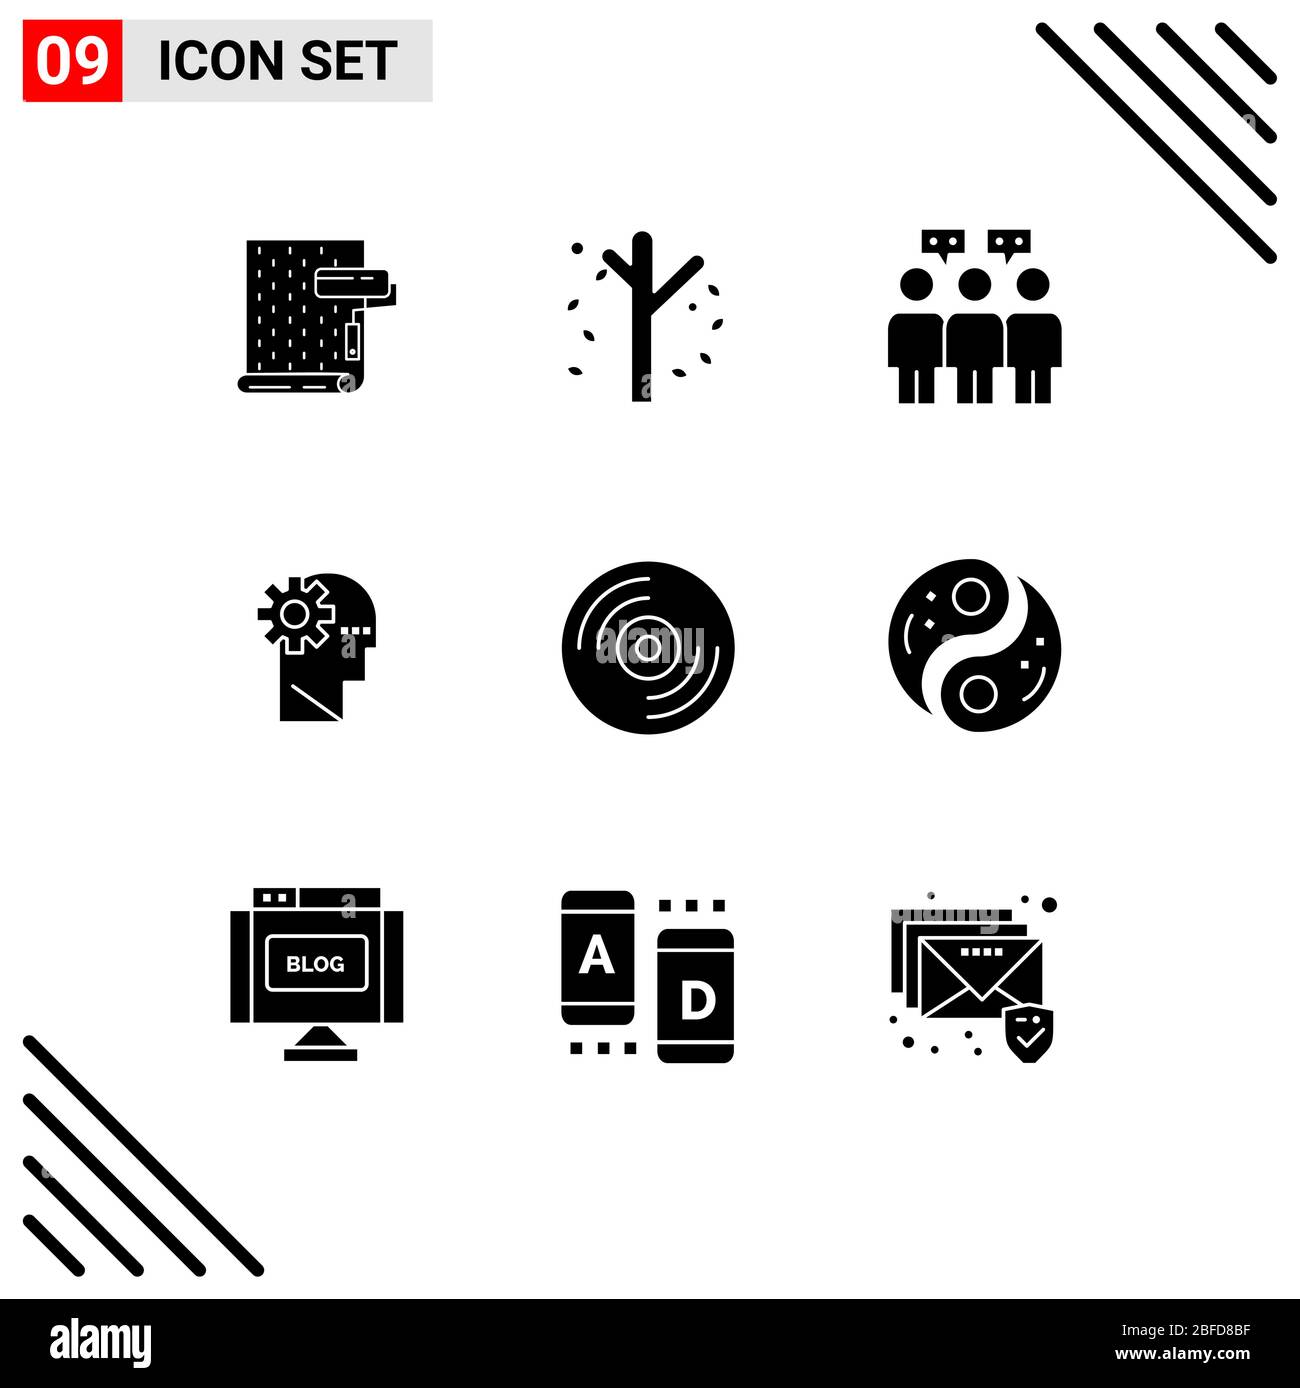 9 interfaccia utente Solid Glyph Pack di segni moderni e simboli di disco, apprendimento, stagione, processo, team Editable Vector Design Elements Illustrazione Vettoriale